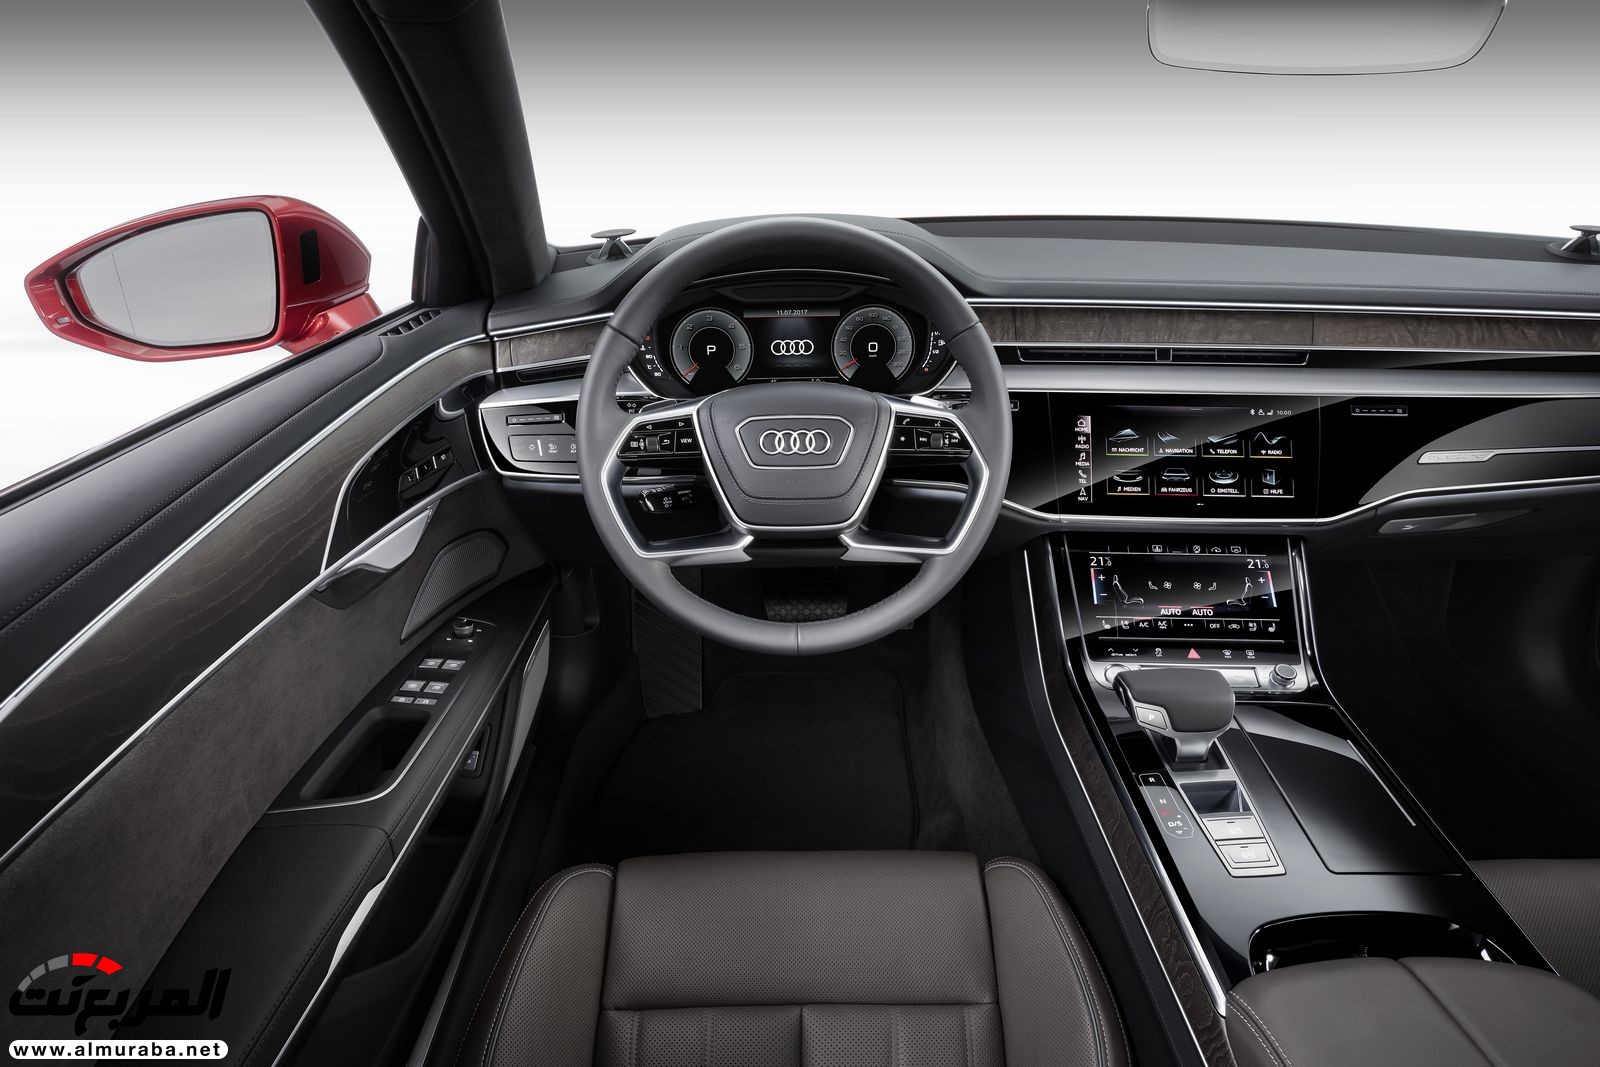 أودي A8 2018 الجديدة كلياً تكشف نفسها بتصميم وتقنيات متطورة "معلومات + 100 صورة" Audi A8 29